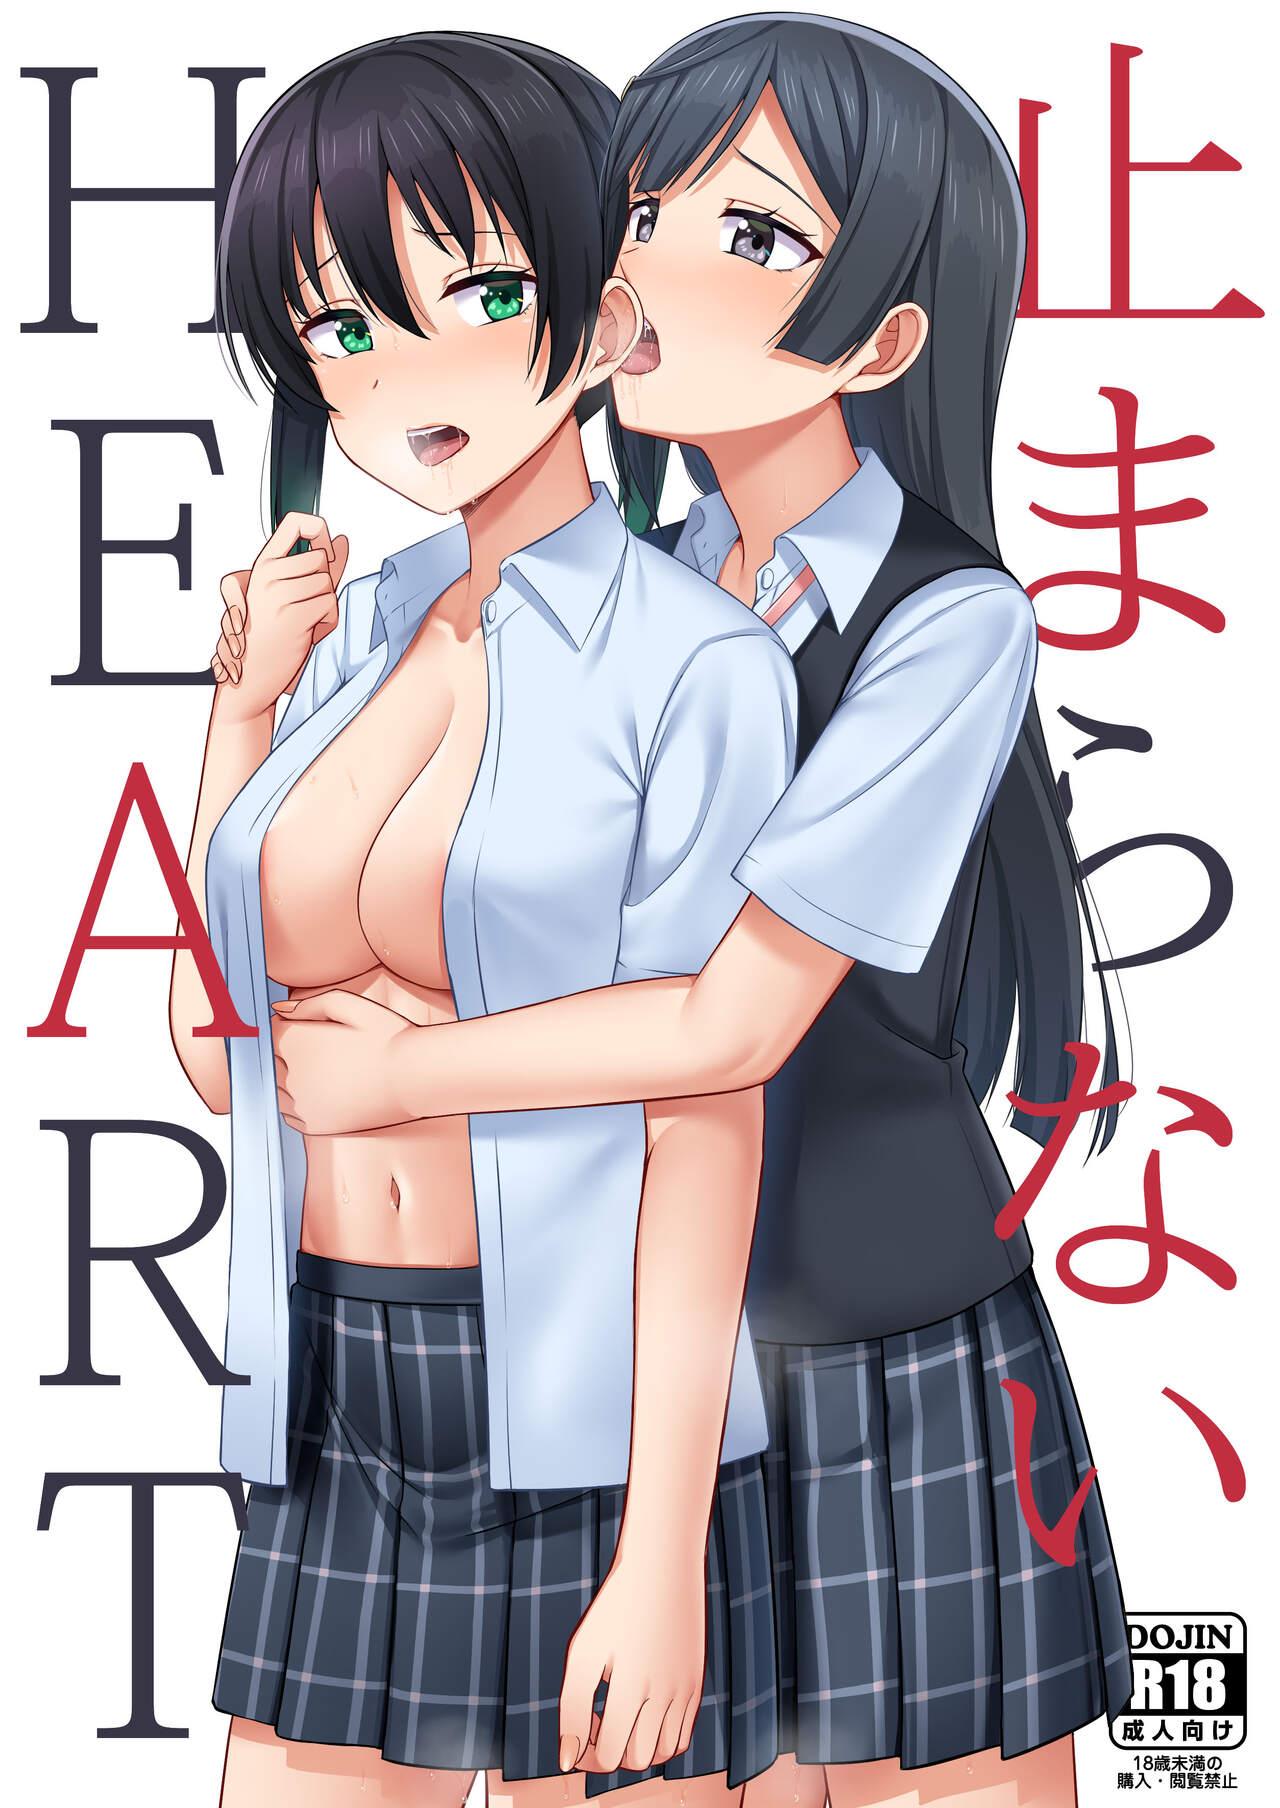 Jockstrap Tomaranai HEART | My HEART Won't Stop - Love live nijigasaki high school idol club Hd Porn - Picture 1